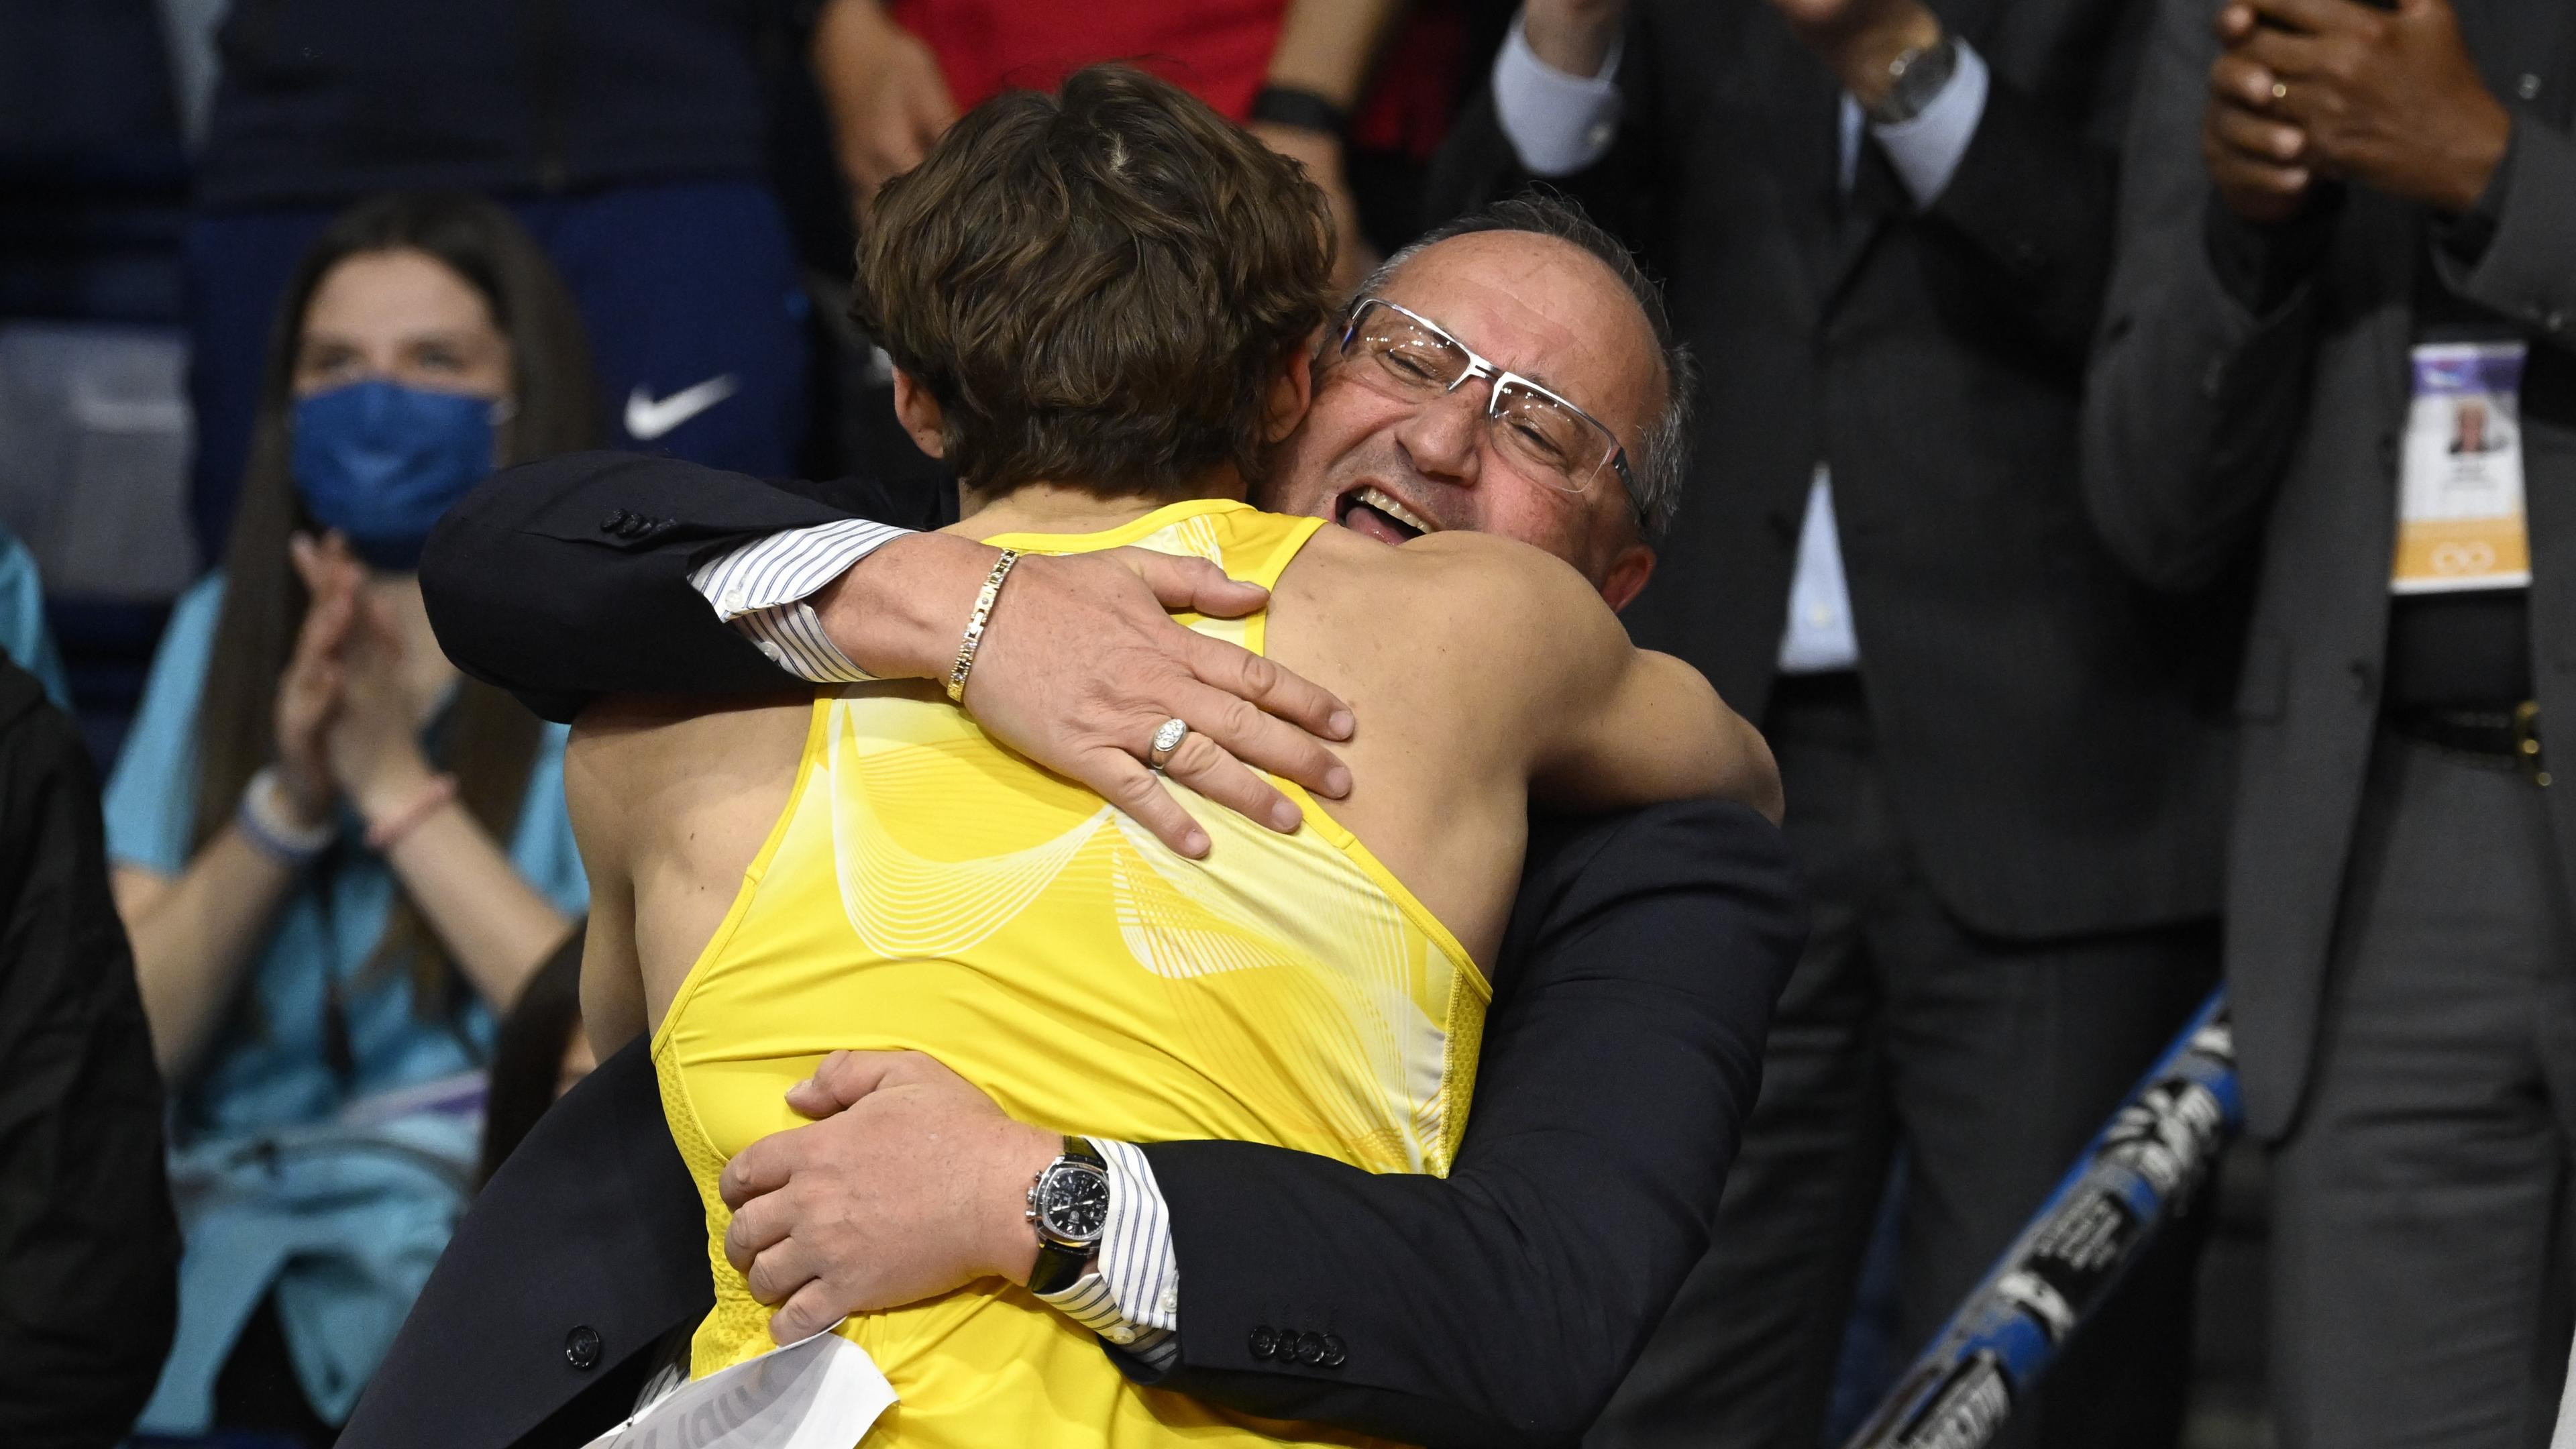 Ett stort ögonblick för Daniel Wessfeldt. Här kramar han om sin adept Armand Duplantis, som just vunnit guld i inomhus-VM i Belgrad 2022. Dessutom på nytt världsrekord, 6,20. Foto: Jessica Gow/TT